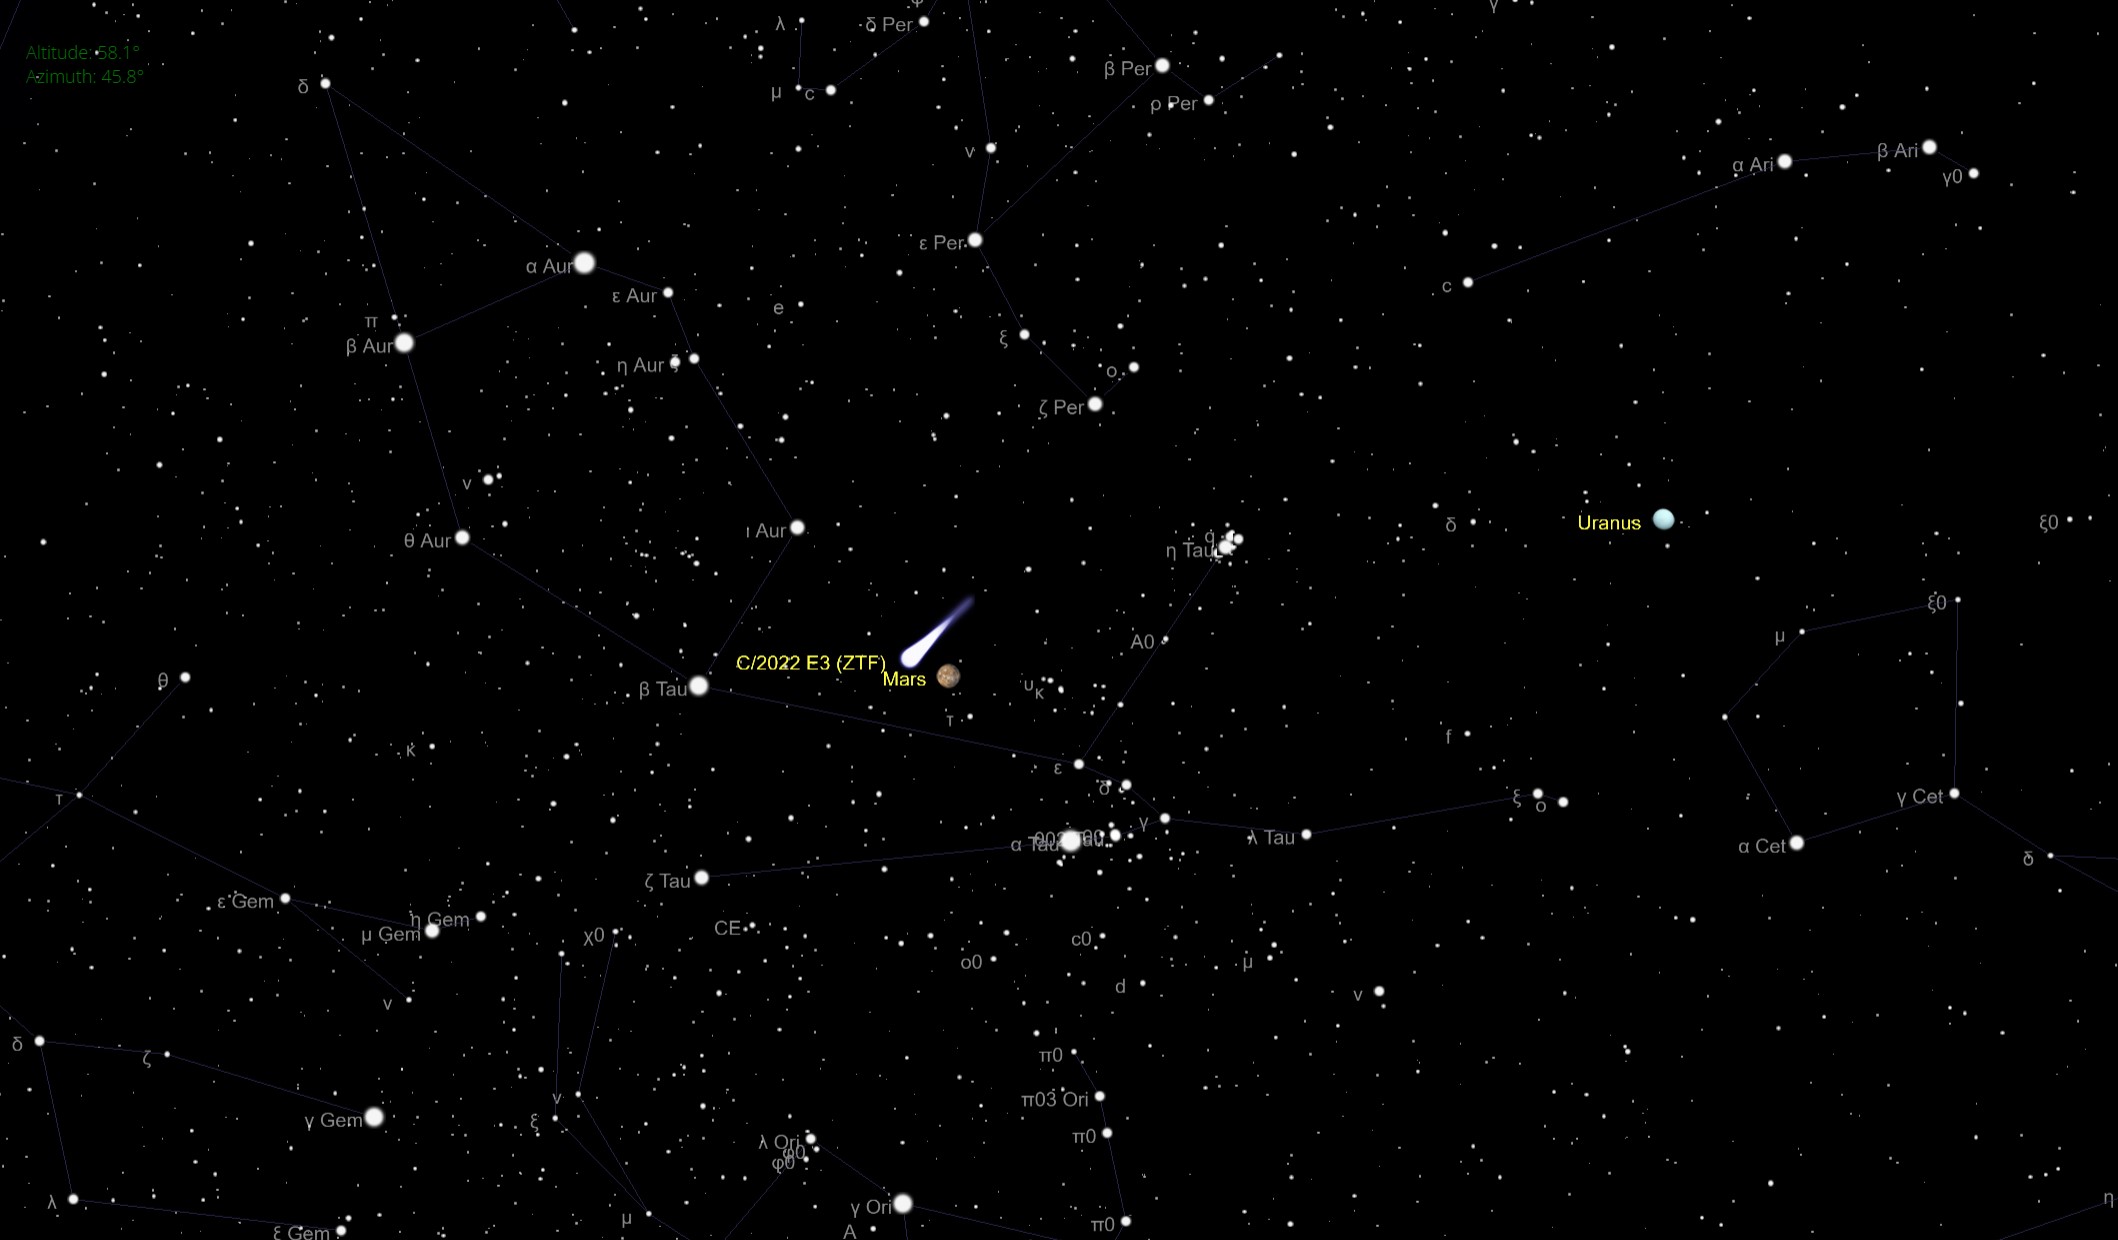 10 फरवरी को शाम 6:45 बजे ईएसटी (2345 जीएमटी) पर न्यूयॉर्क शहर से उत्तर की ओर मुंह किए हुए रात के आकाश का एक चित्रण, धूमकेतु सी/2022 ई3 जेडटीएफ को मंगल ग्रह के करीब दिखा रहा है।